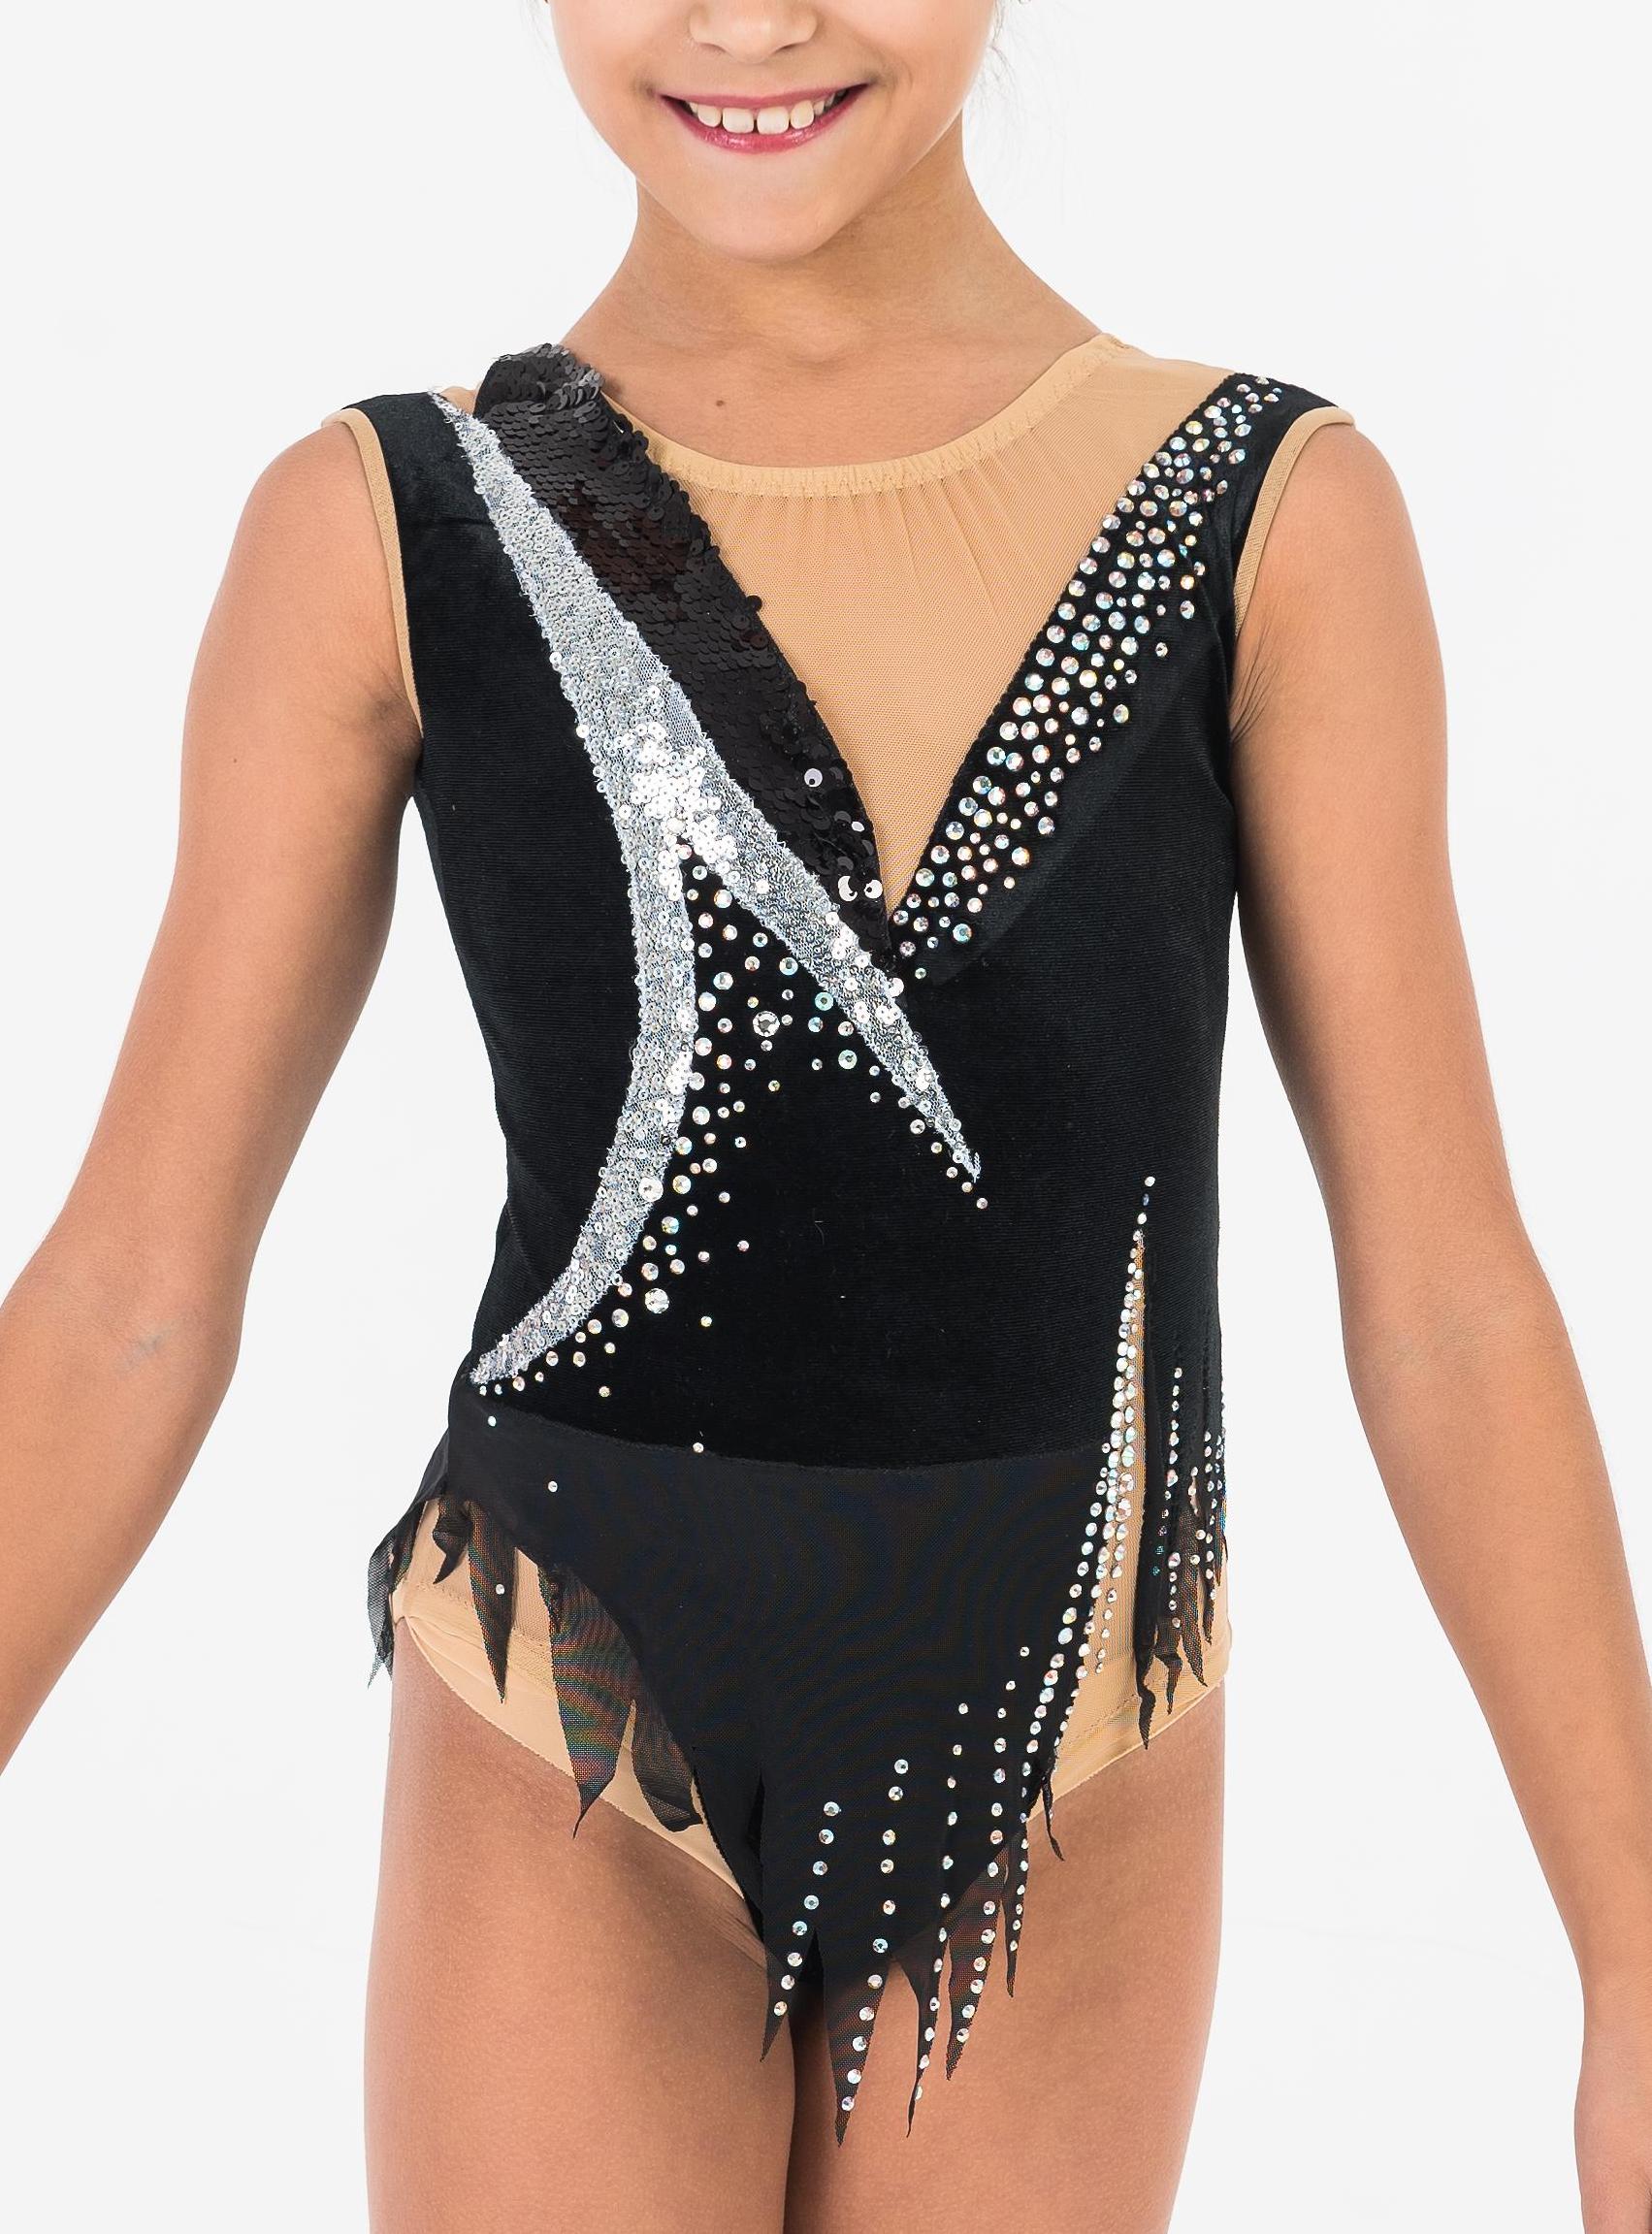 Купальник для художественной гимнастики Мелисандра — купить в  интернет-магазине «Танцующие»